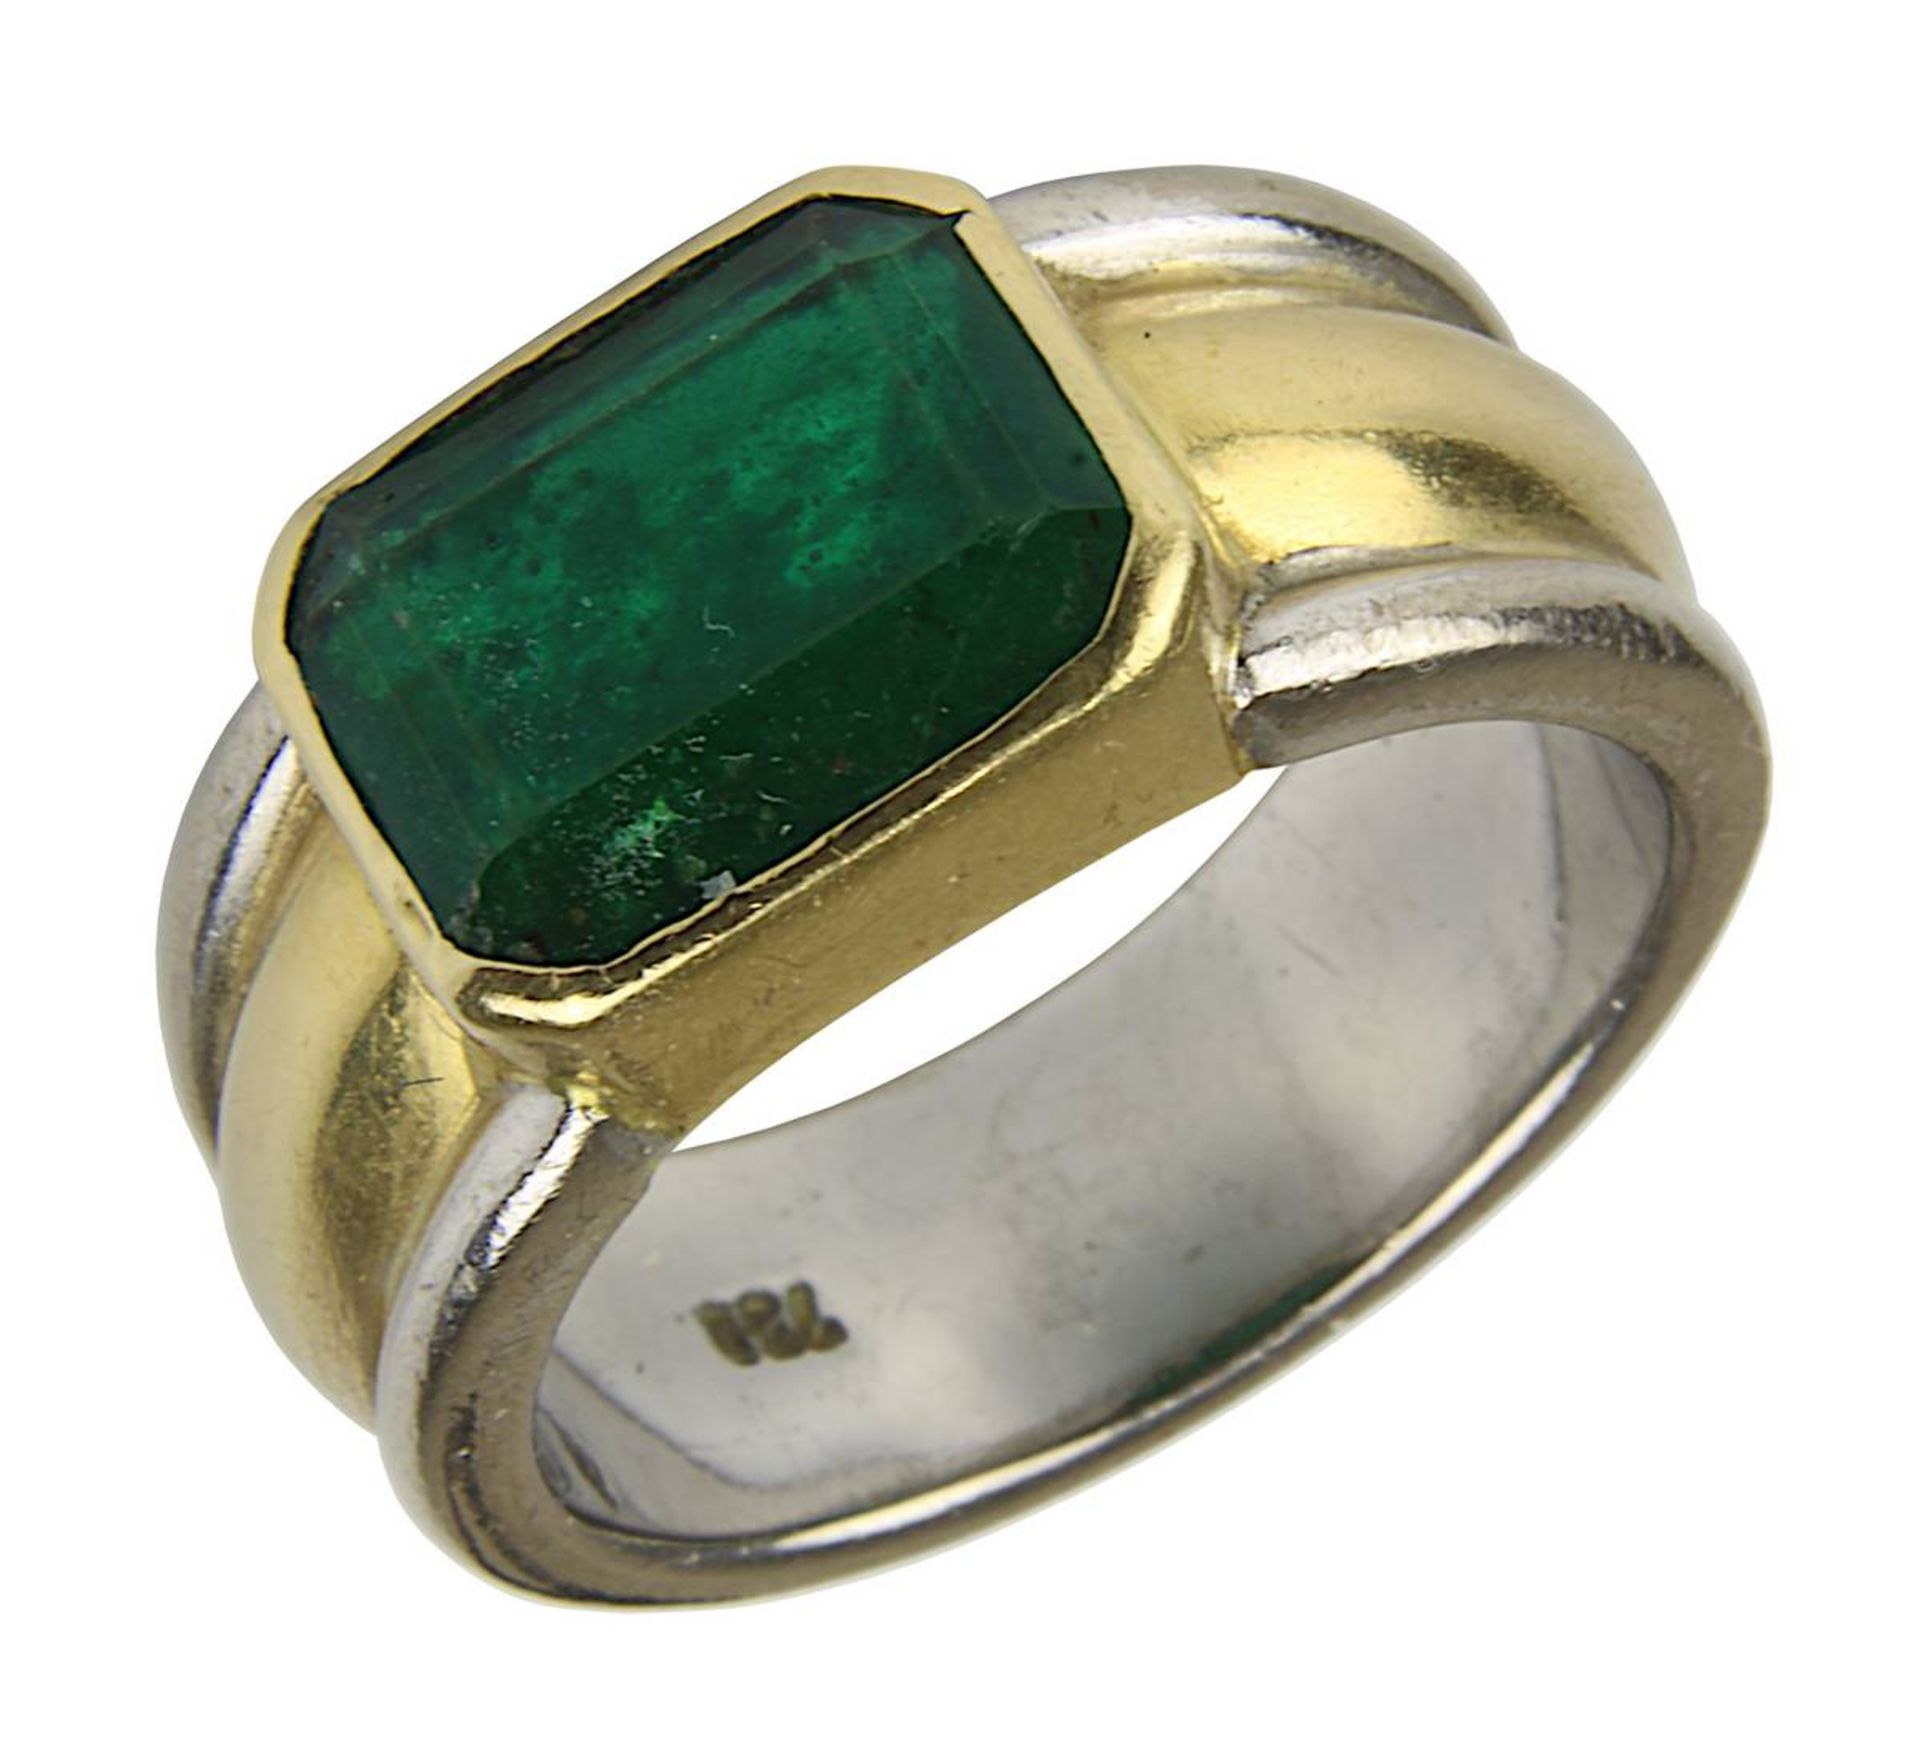 Bicolor-Smaragdring, Ringschiene gepunzt 750, mit einem dunkelgründen Smaragd, rechteckig, trüb, ca.